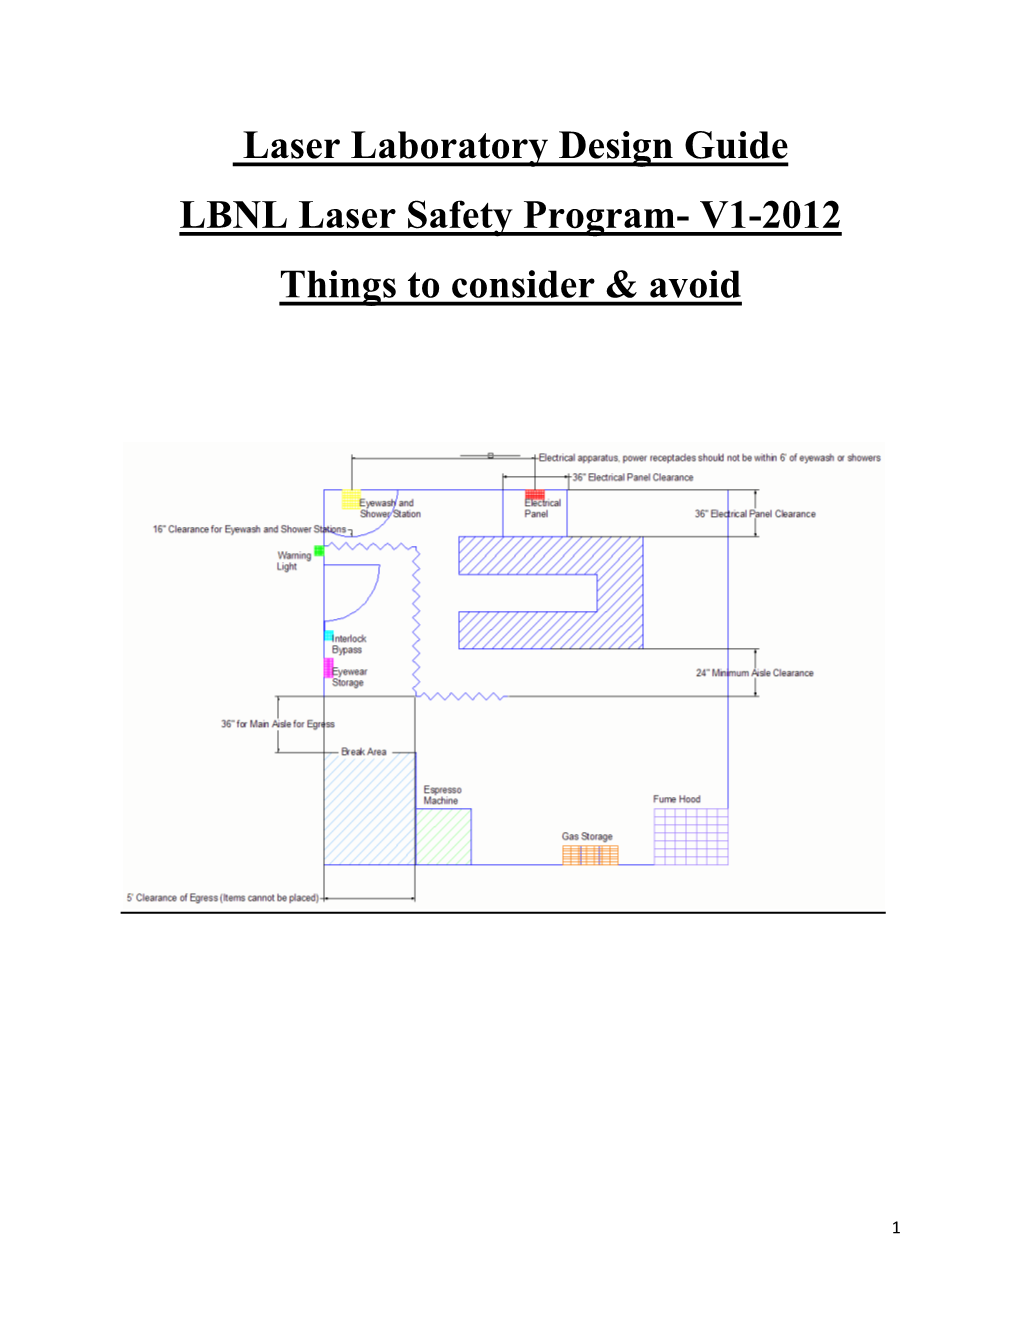 Laser Laboratory Design Guide LBNL Laser Safety Program- V1-2012 Things to Consider & Avoid